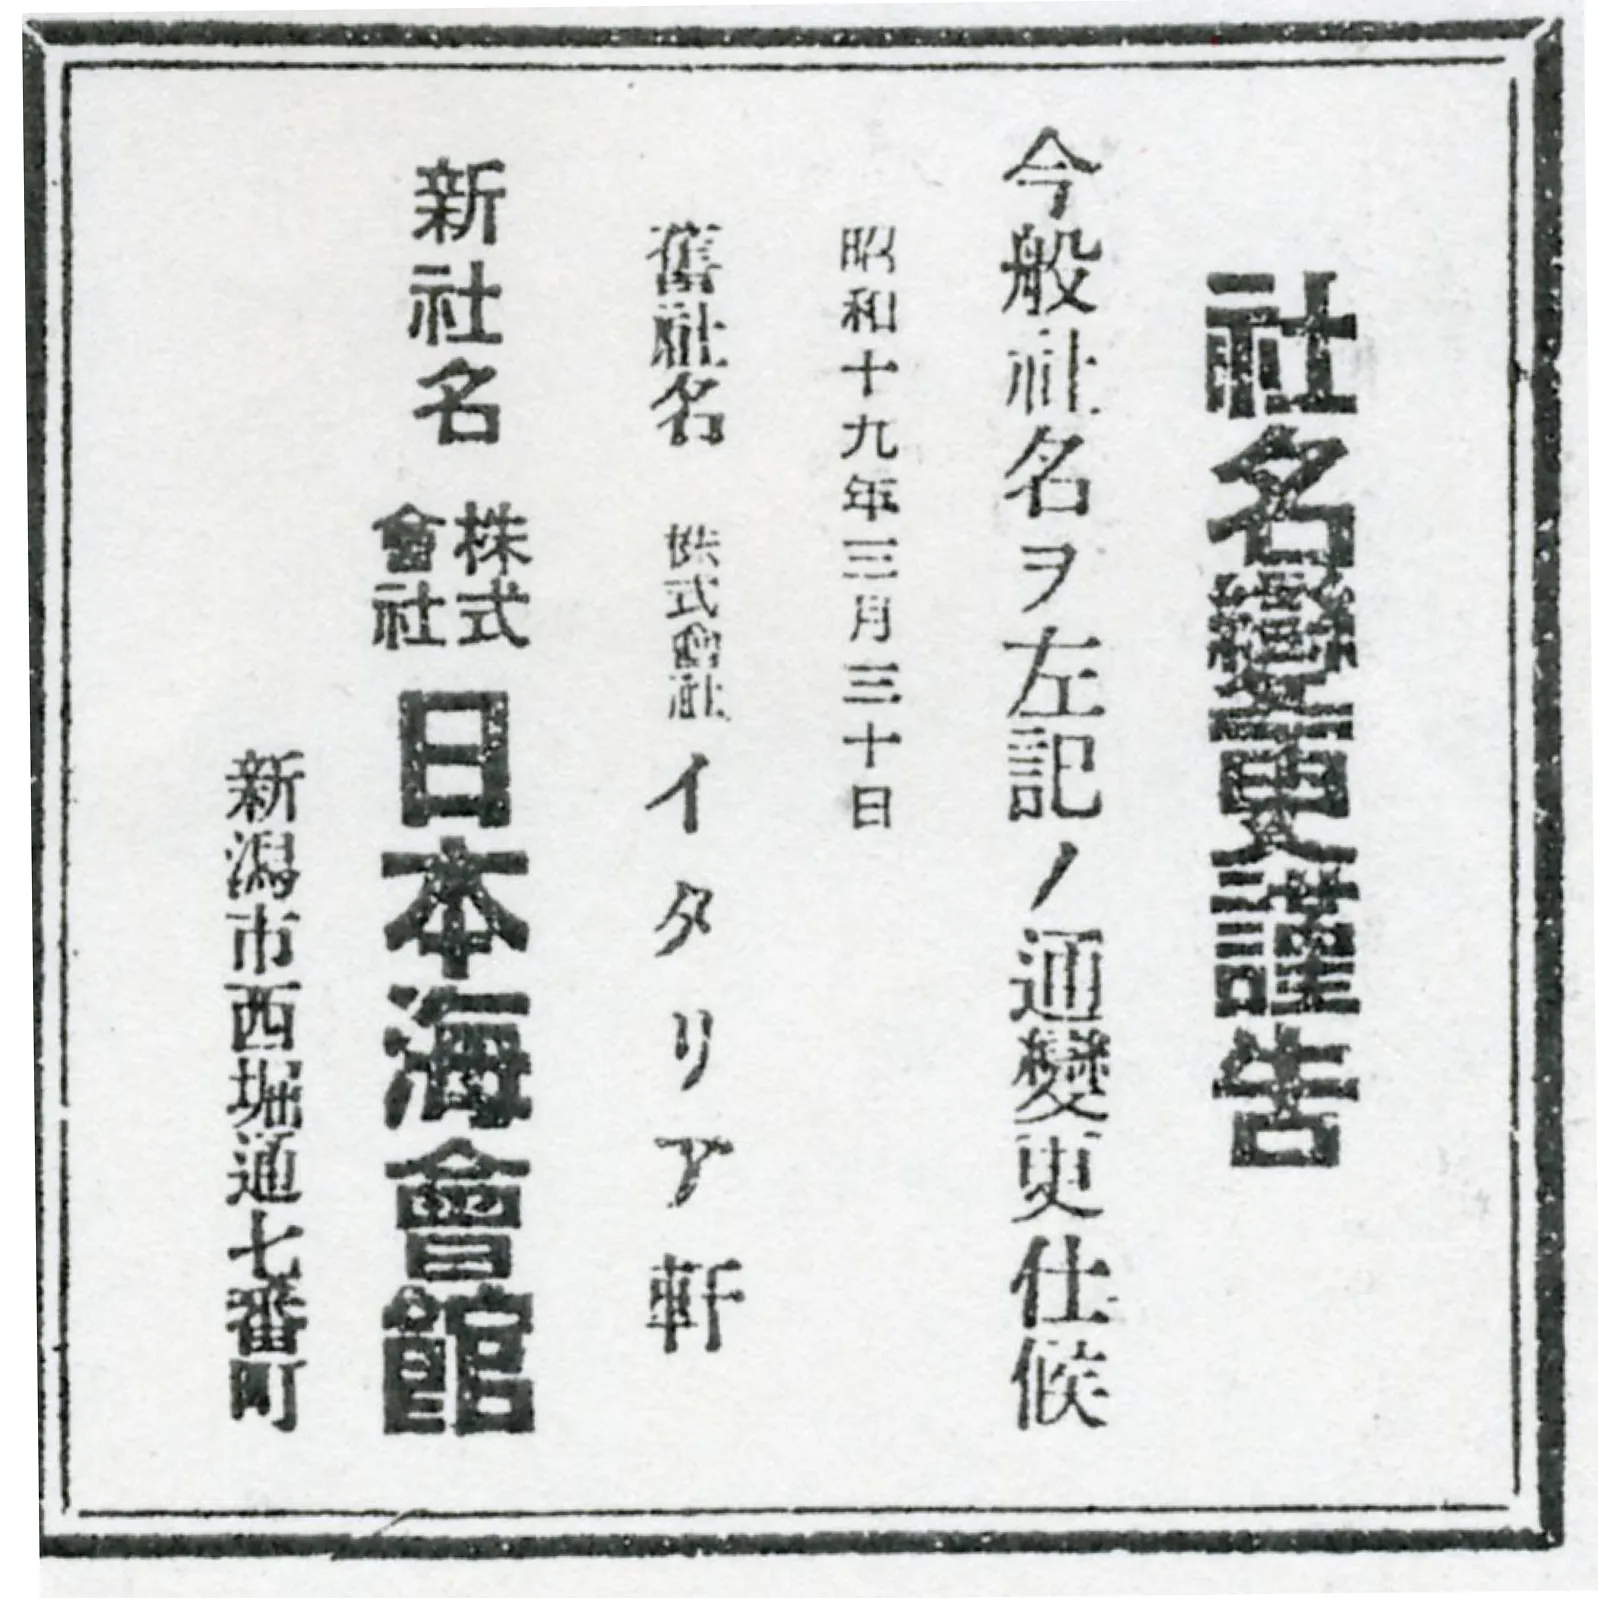 昭和19年3月31日の新聞広告